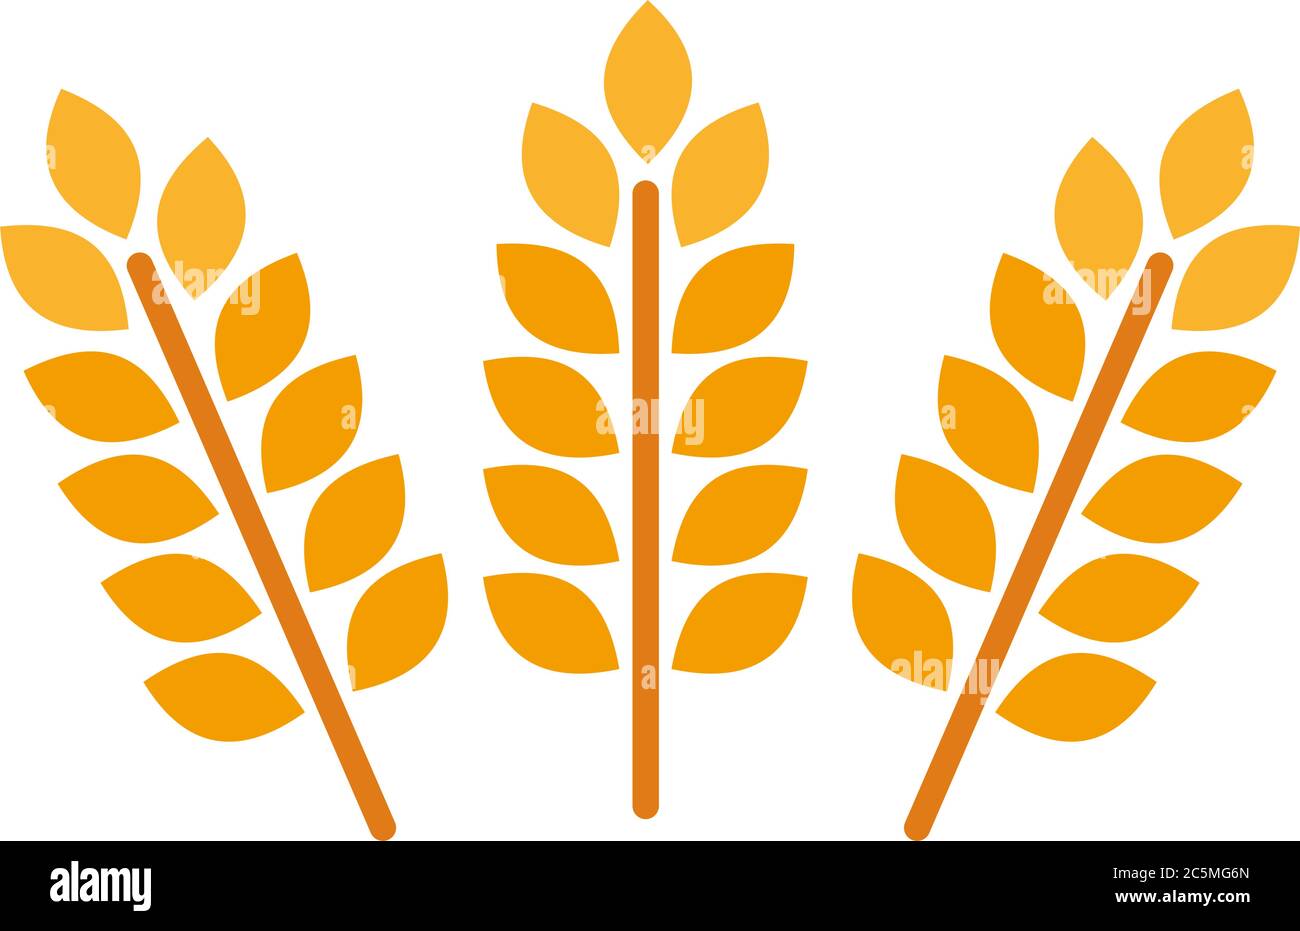 Weizen- und Roggenohren. Gerste Reiskörner und Elemente für Bier Logo oder Bio-Lebensmittel. Vektor-Illustration isoliert heraldischen Formen golden Stock Vektor